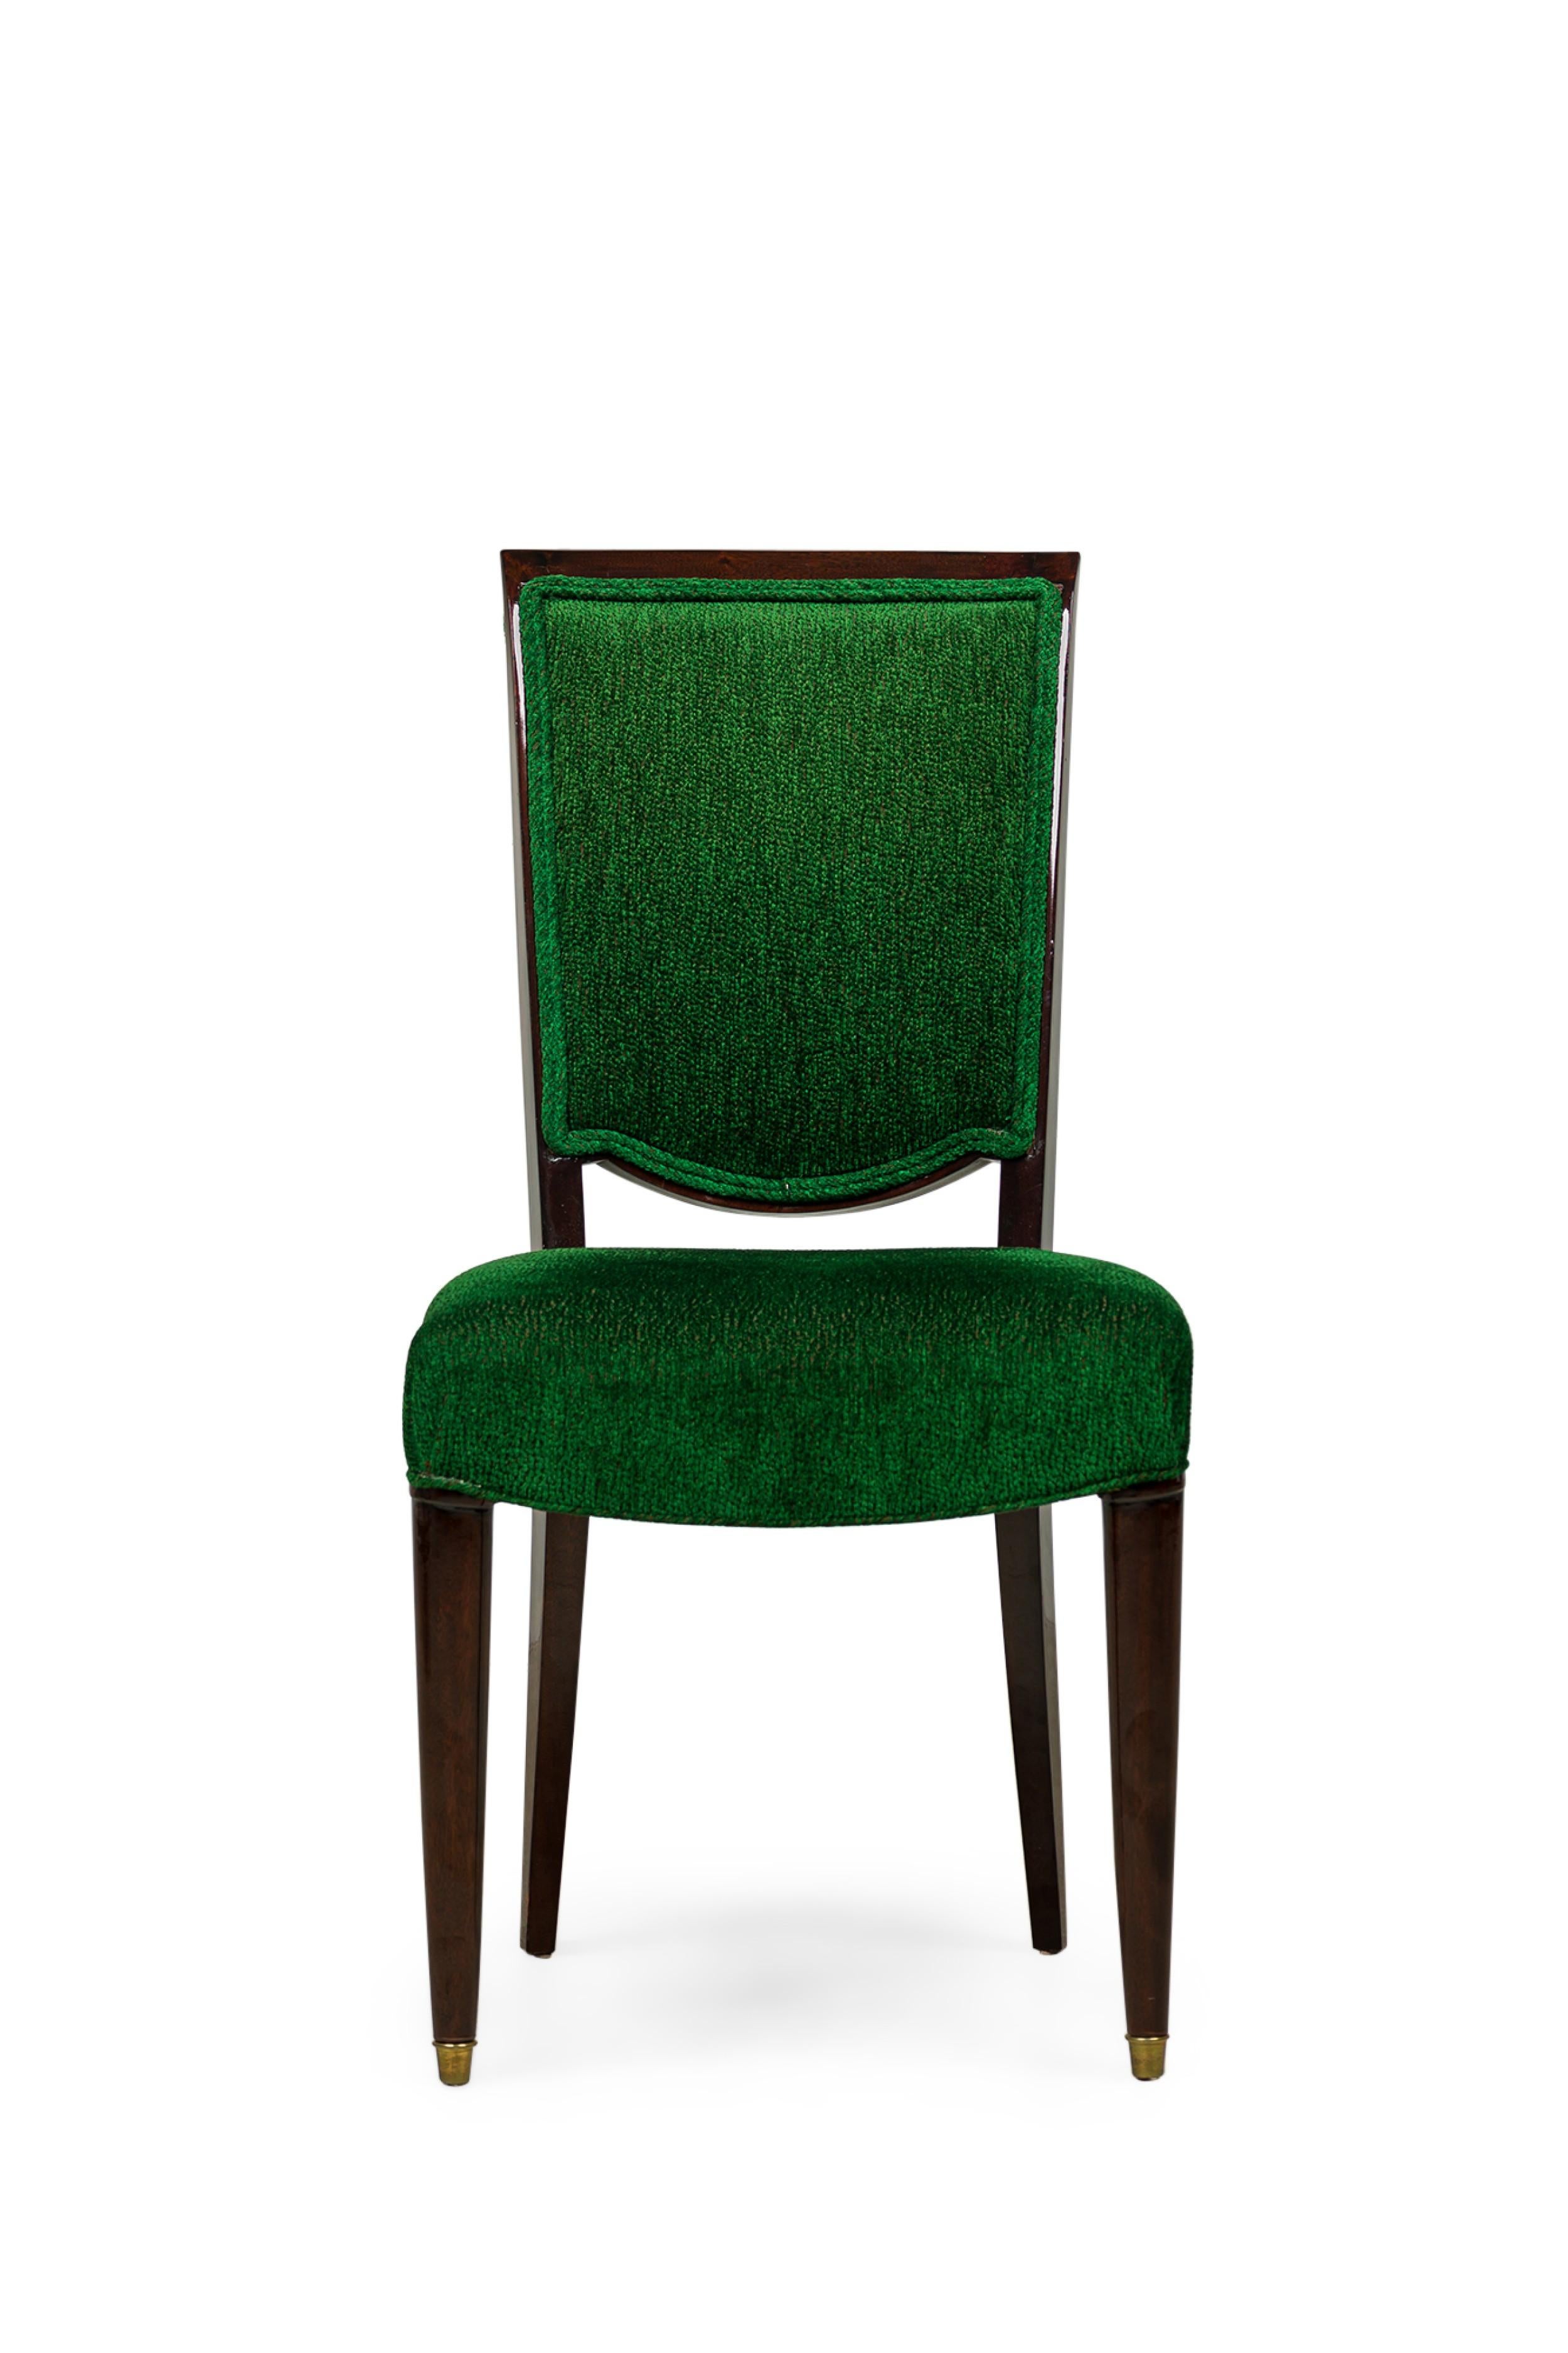 SET von 8 französischen Art Deco Esszimmerstühlen mit grüner Polsterung und mit Scroll Beinen mit vergoldeten Messing Sabots. (JULES LELEU)(PREIS ALS SET)
